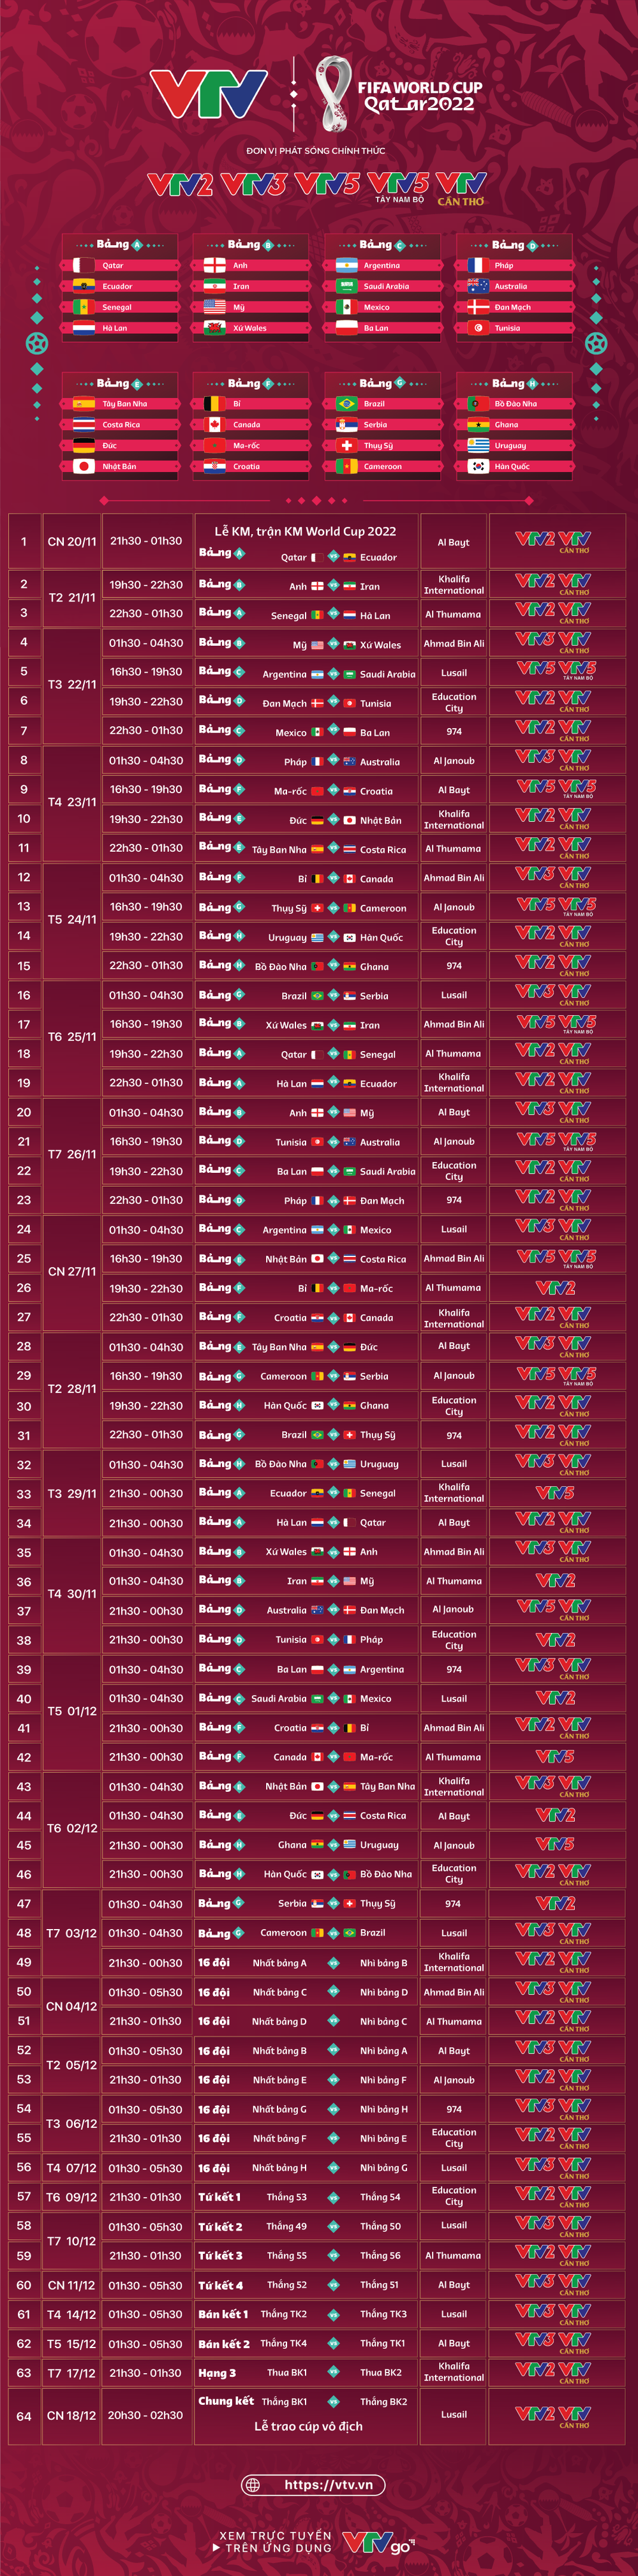 Lịch thi đấu và trực tiếp 64 trận đấu của FIFA World Cup 2022™ trên VTV - Ảnh 1.